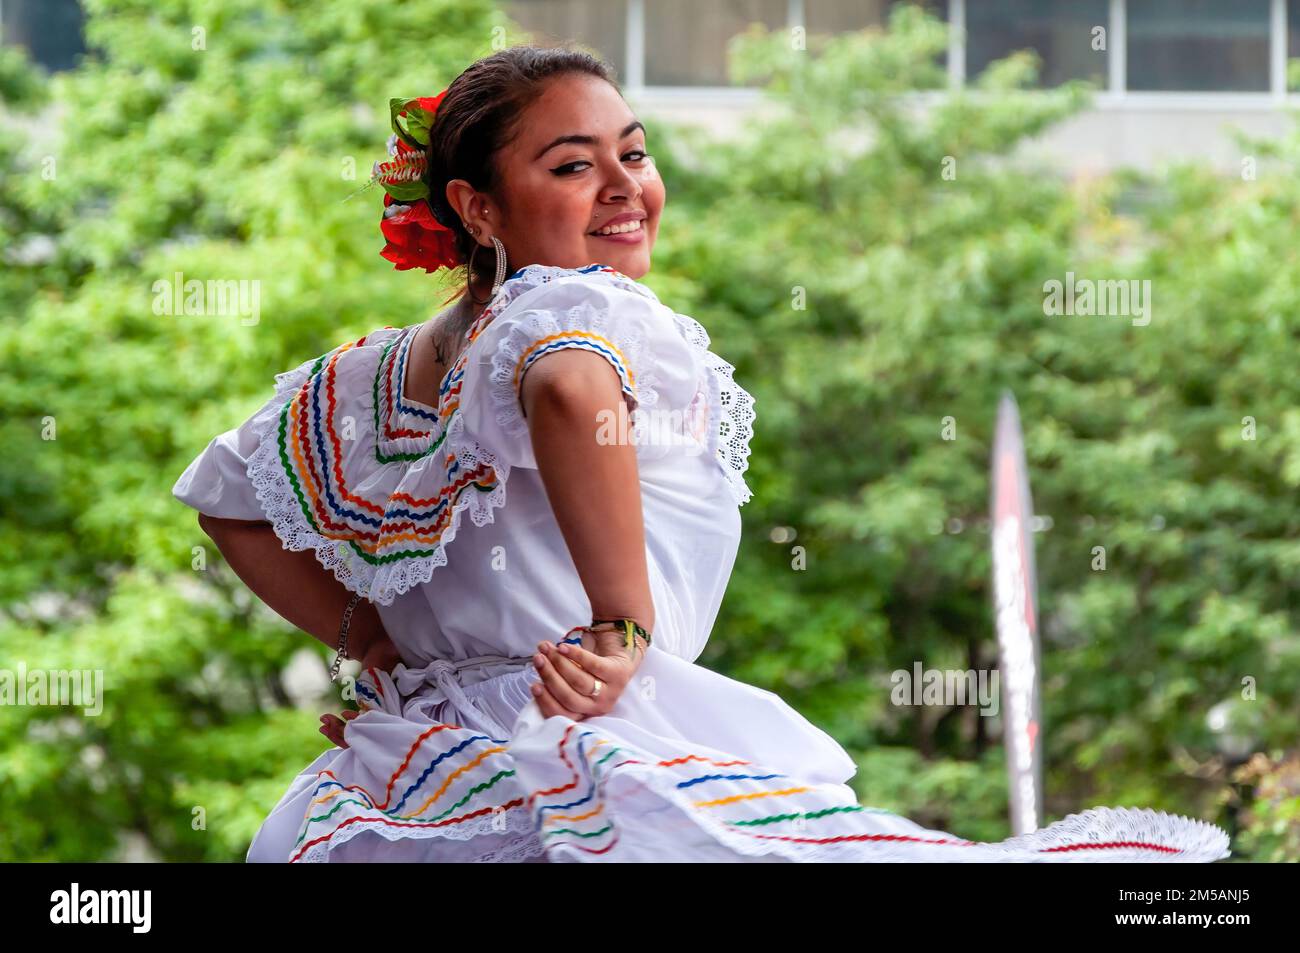 Una donna sorridente indossa abiti tradizionali latinoamericani mentre balla sul palco. L'evento annuale si svolge in piazza Mel Lastman. Foto Stock